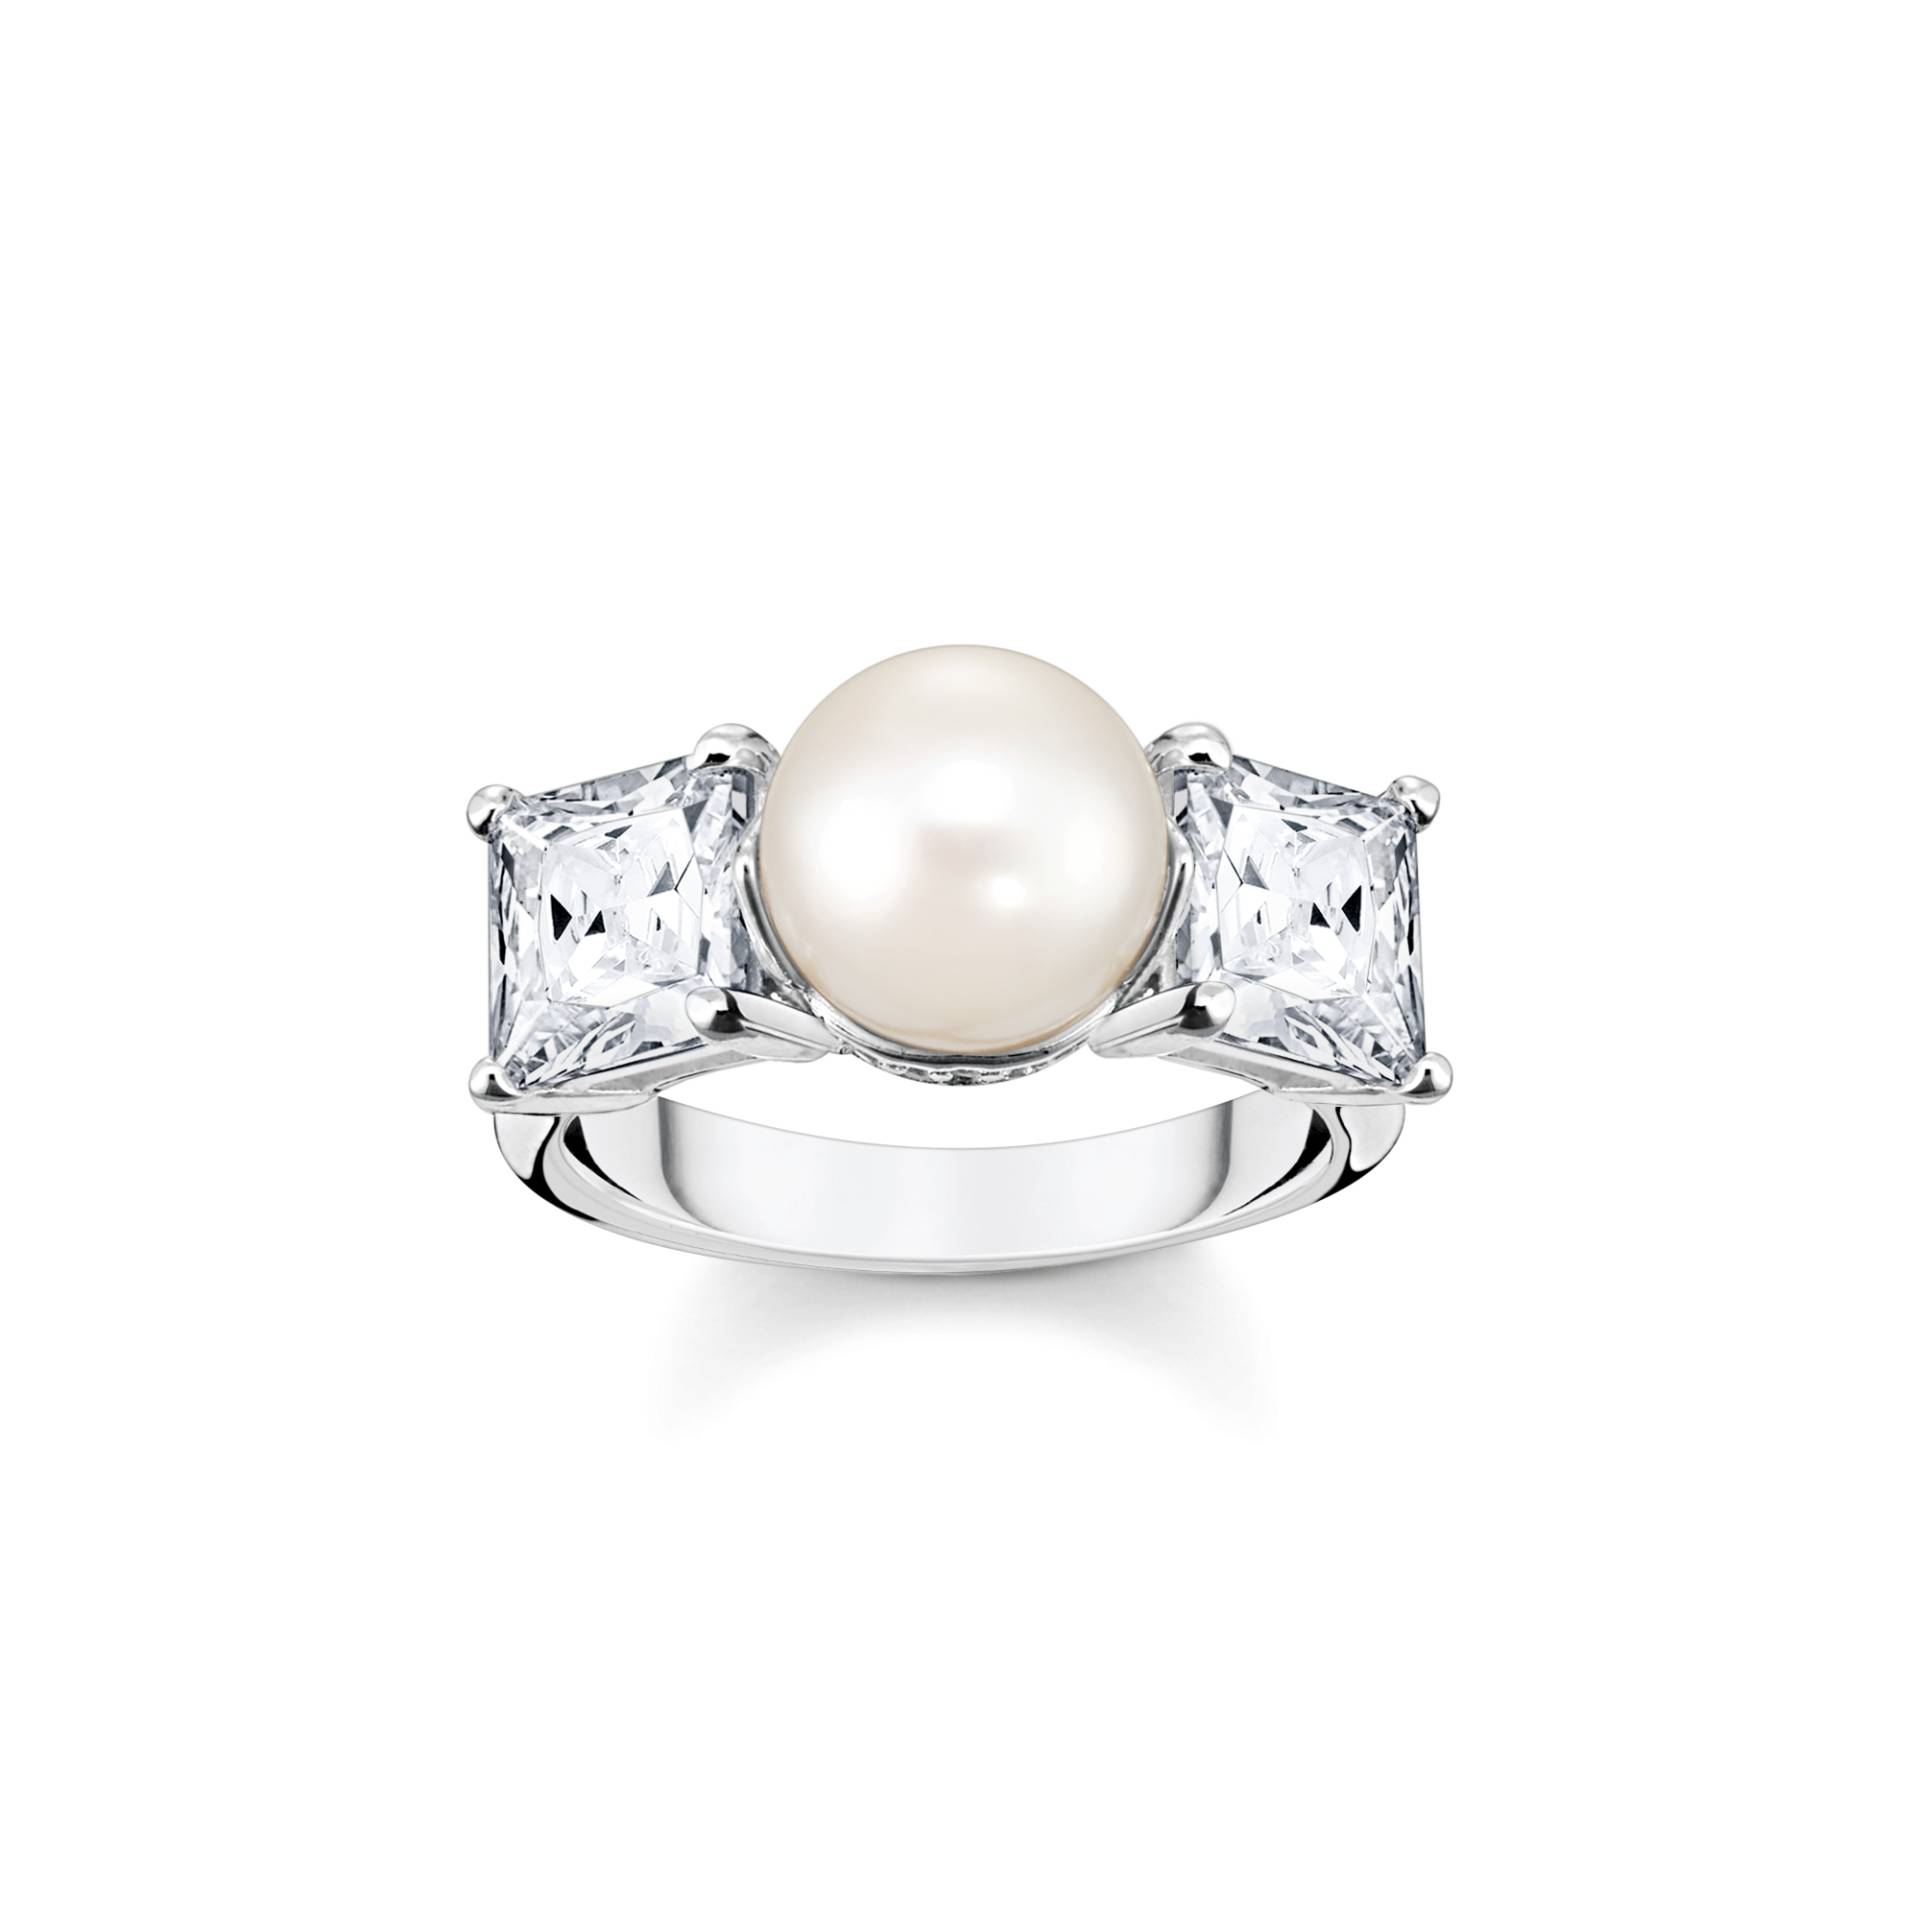 Thomas Sabo Ring Perle mit weißen Steinen silber weiß TR2408-167-14-48 von Thomas Sabo